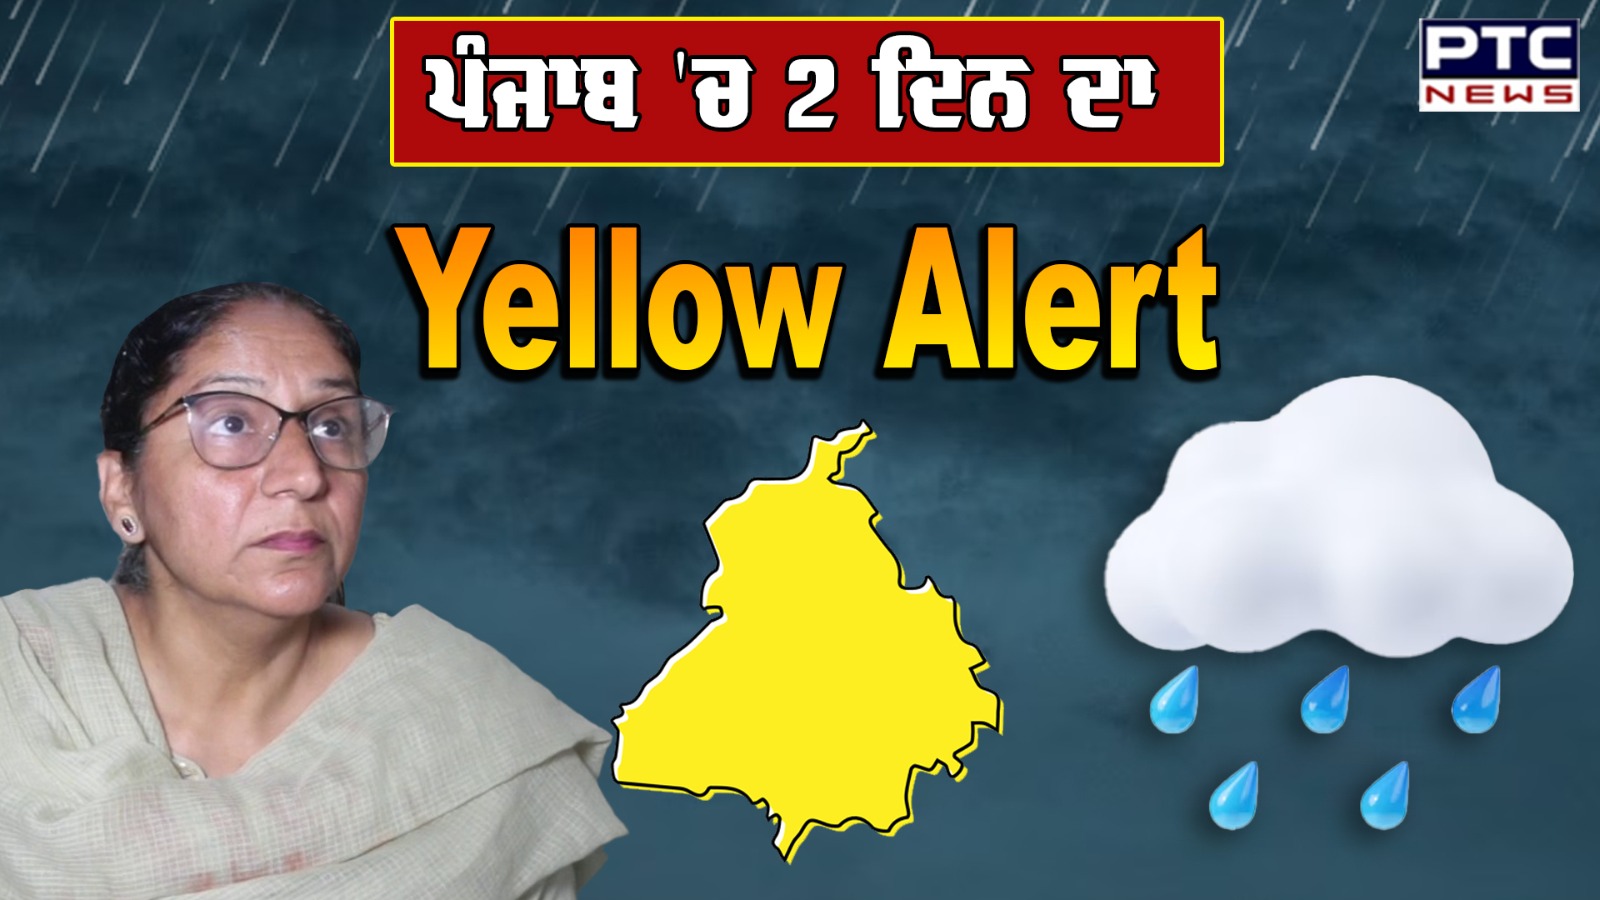 Punjab 'ਚ 2 ਦਿਨ ਦਾ Yellow Alert ਜਾਰੀ, ਆਉਣ ਵਾਲੇ ਦਿਨਾਂ 'ਚ ਹੋ ਸਕਦੀ ਹੈ ਬਰਸਾਤ